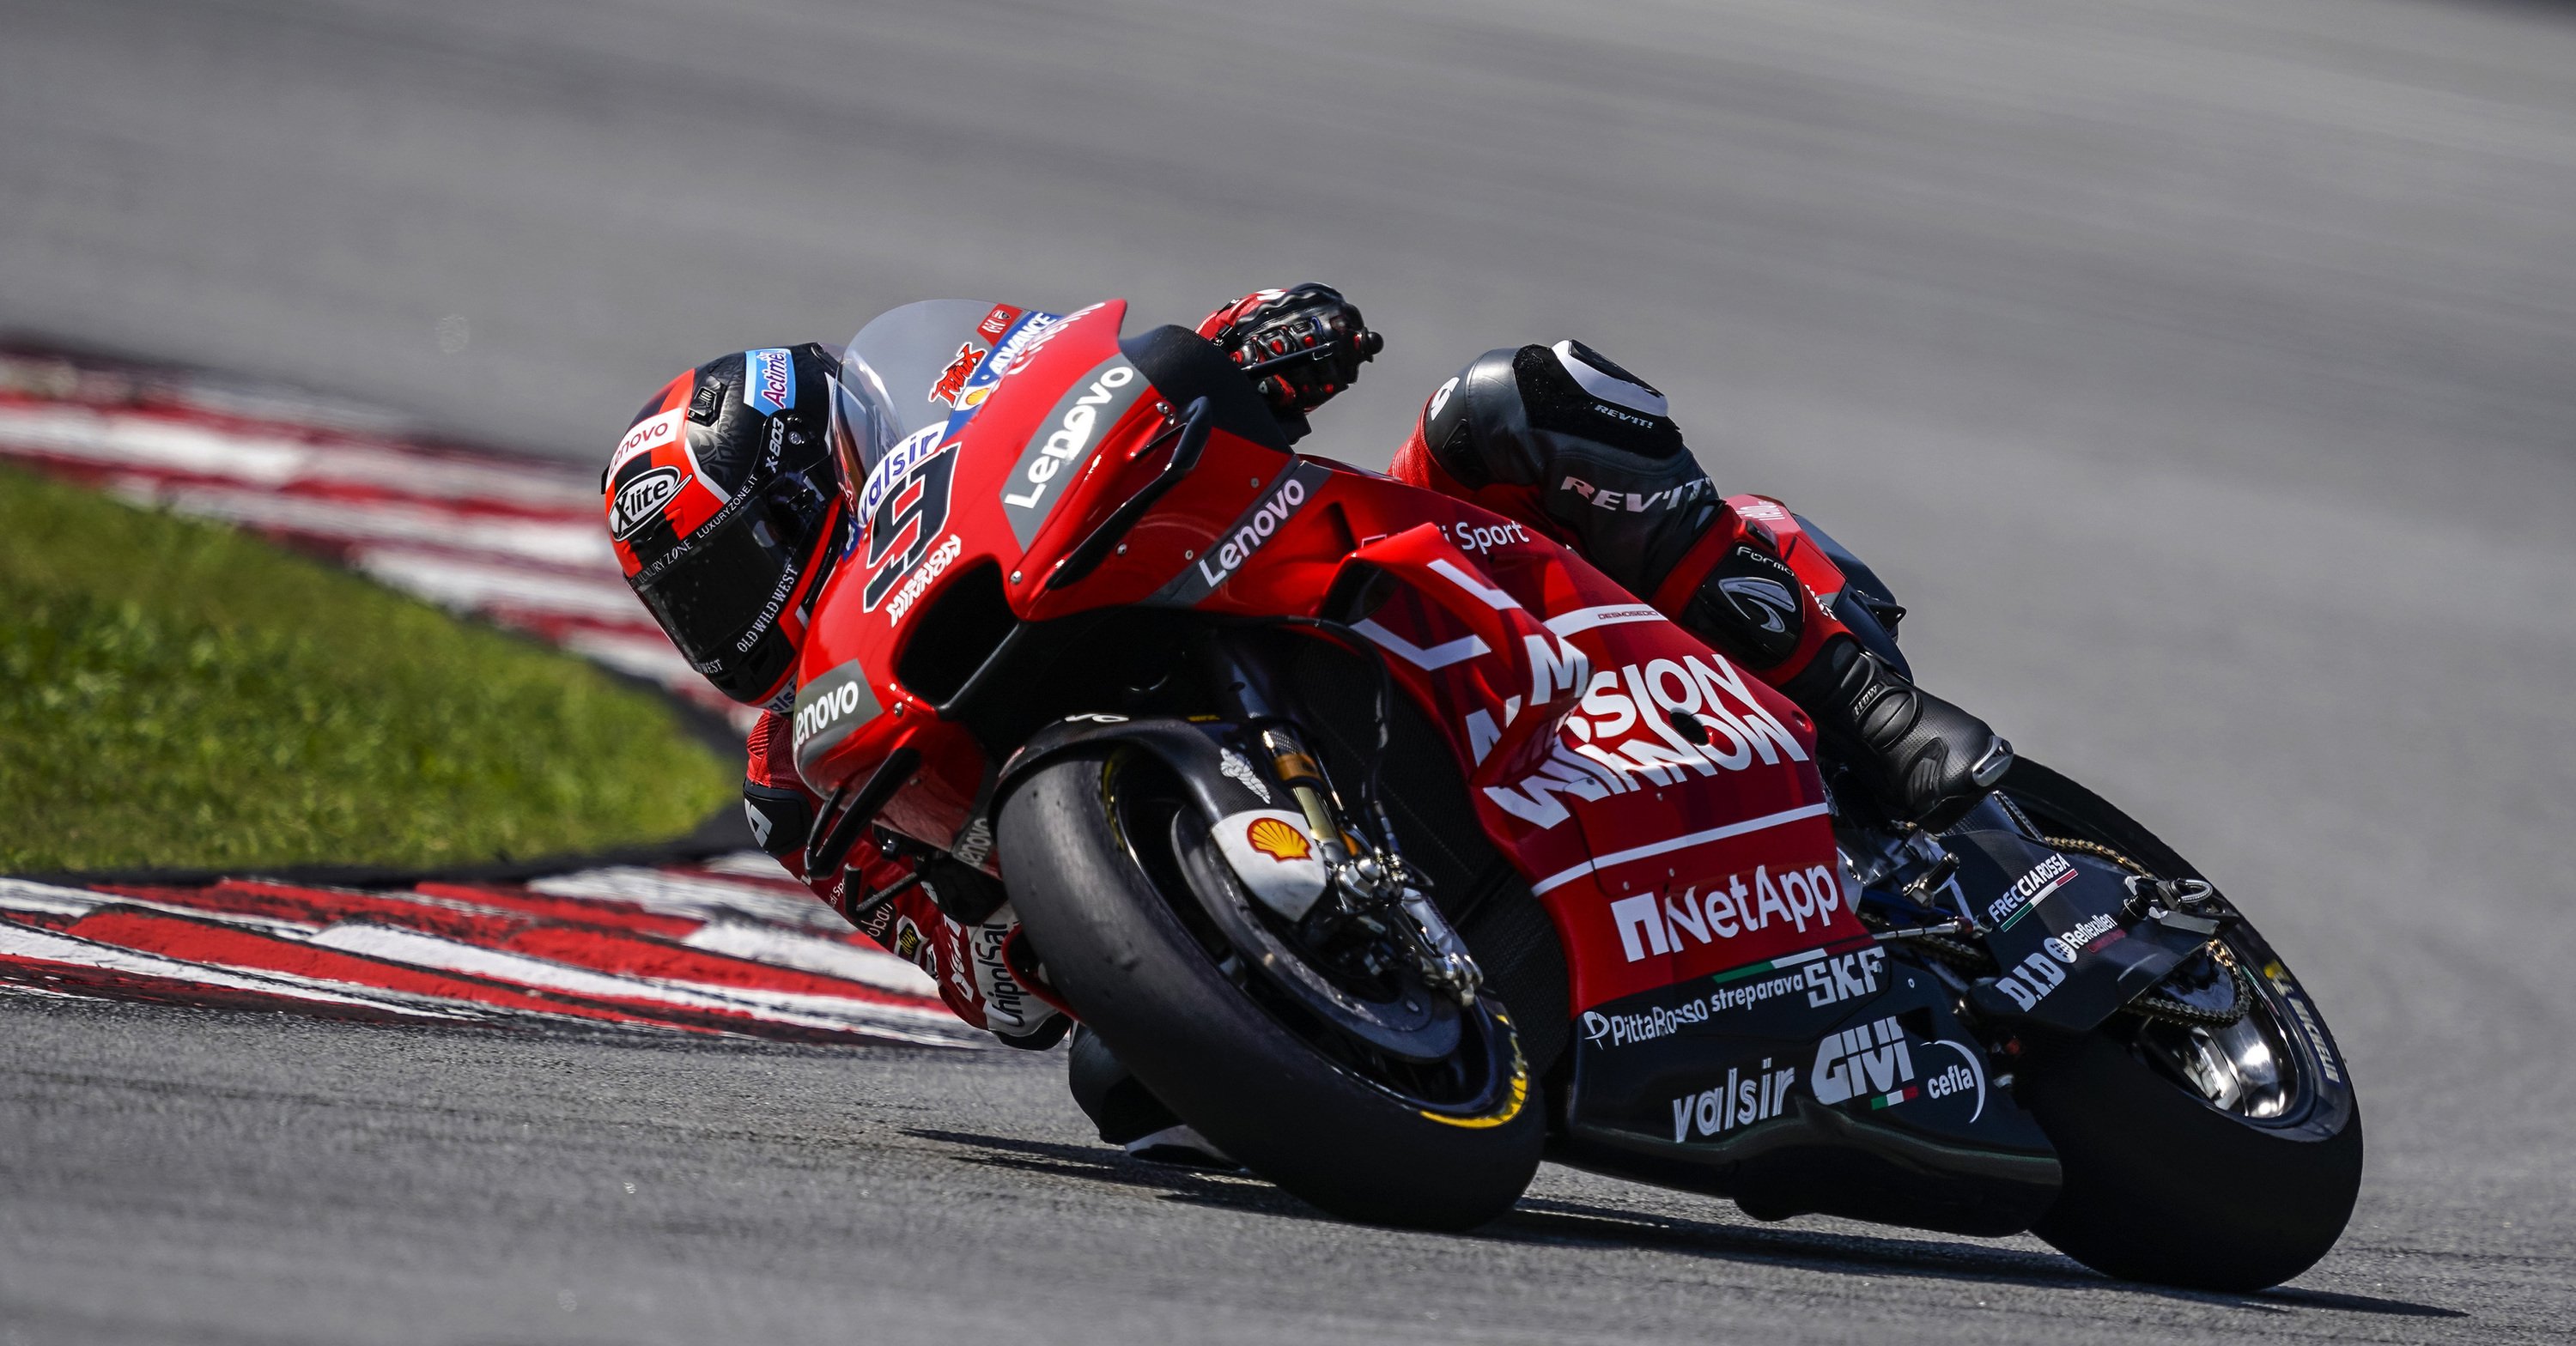 LIVE - I test MotoGP 2019 a Sepang. Petrucci chiude in testa